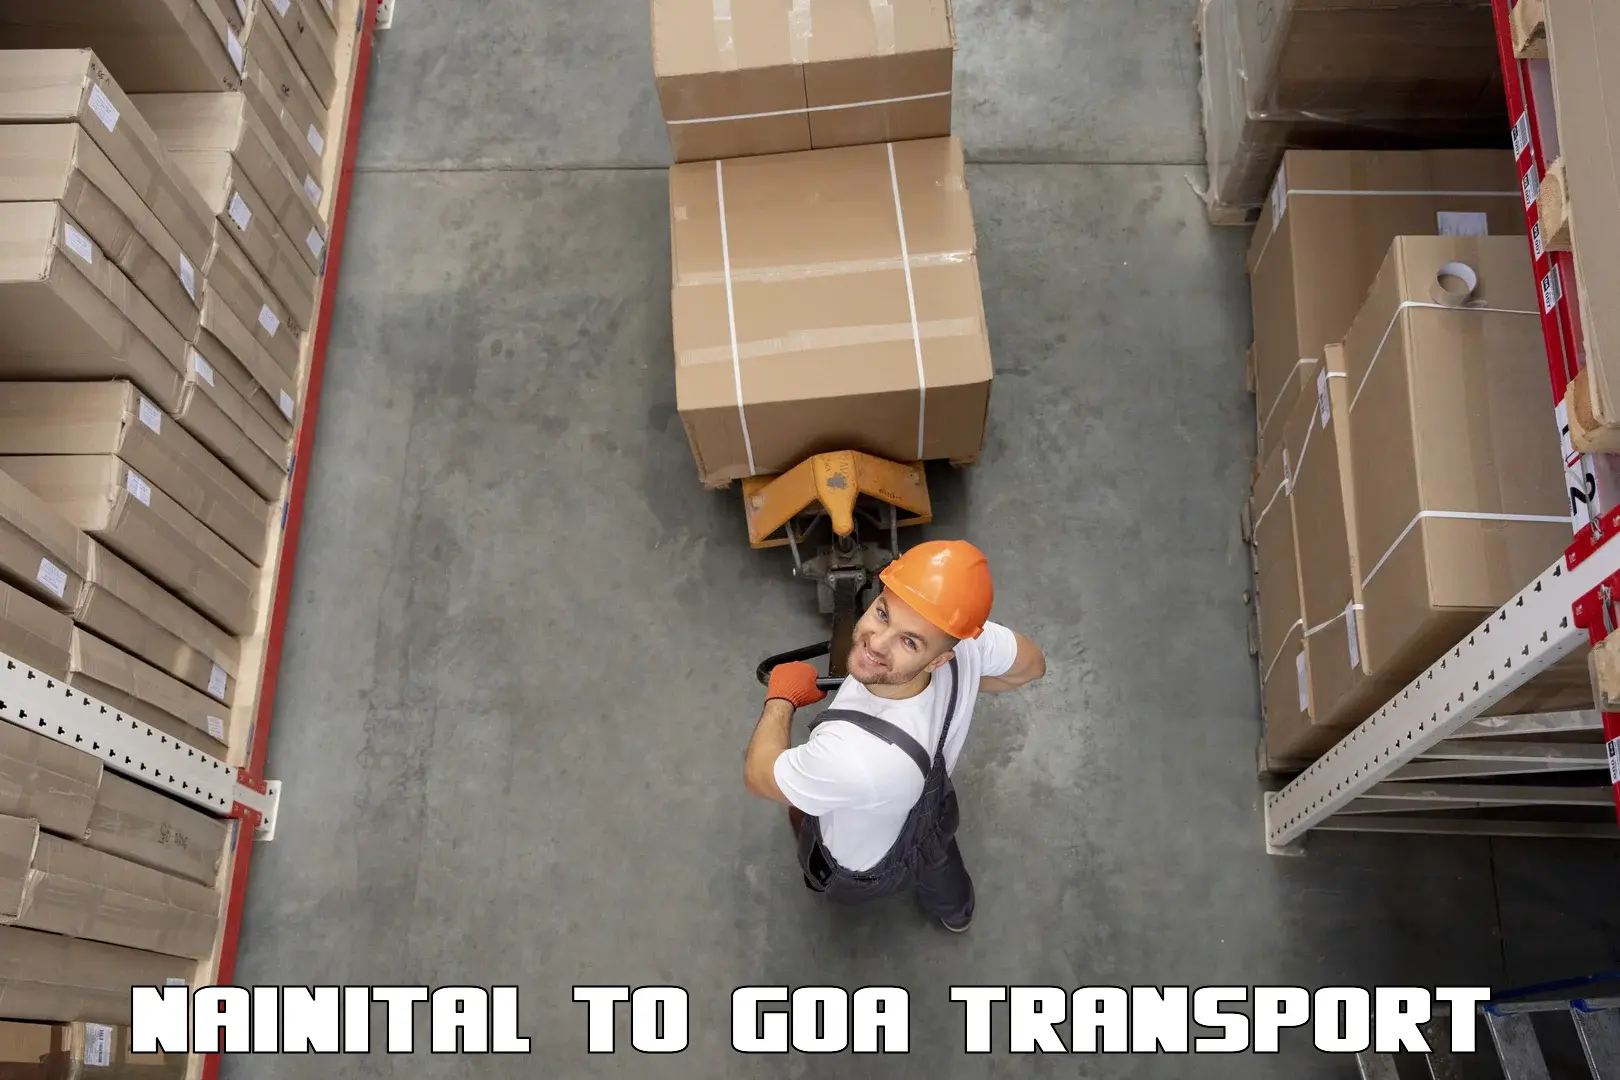 Daily transport service Nainital to Goa